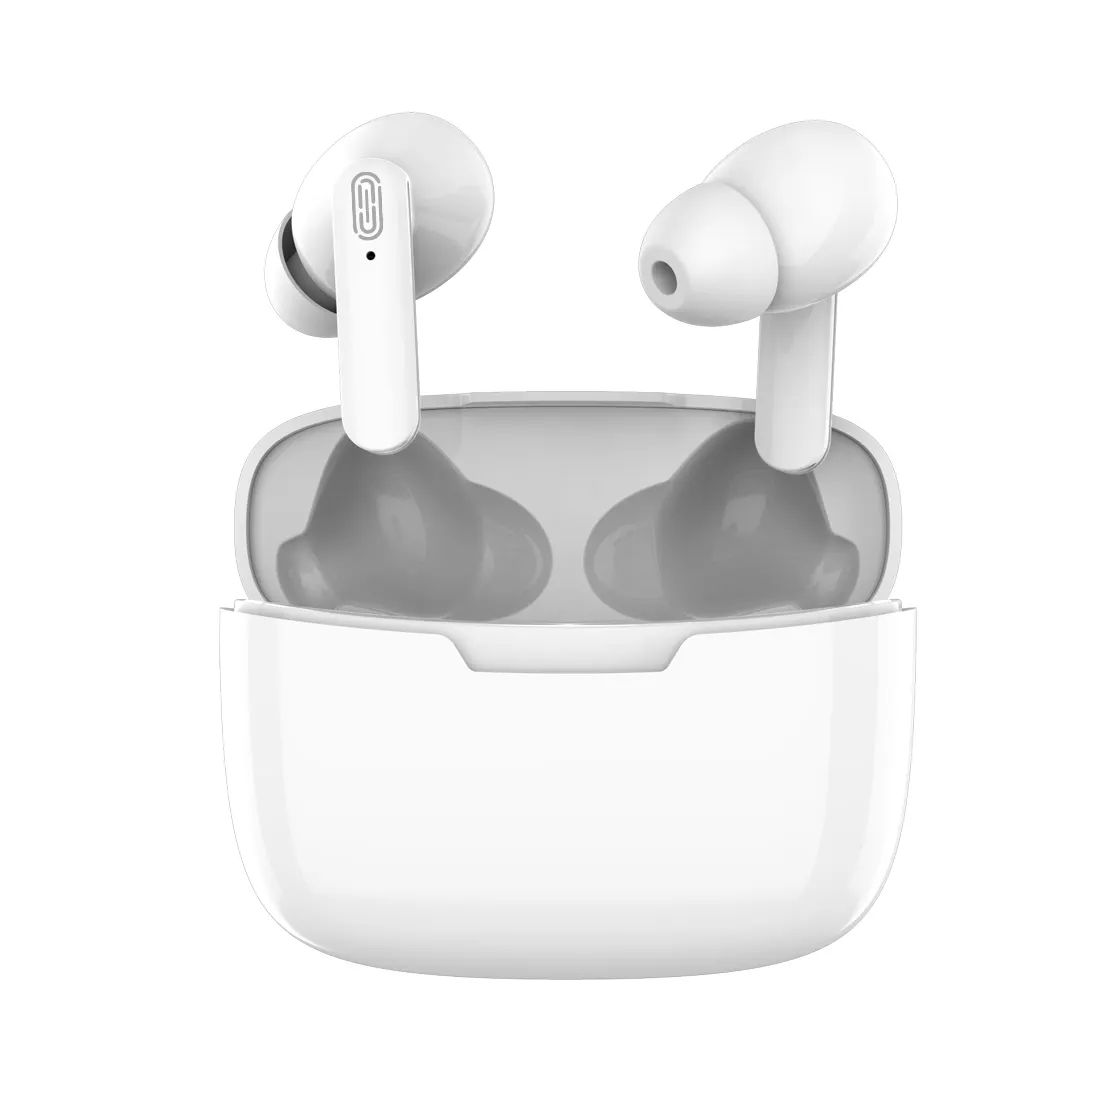 Bluetooth Headphones Fone De Ouvido Audifonos Auriculares Earbuds Tws Waterproof Wireless Earphones